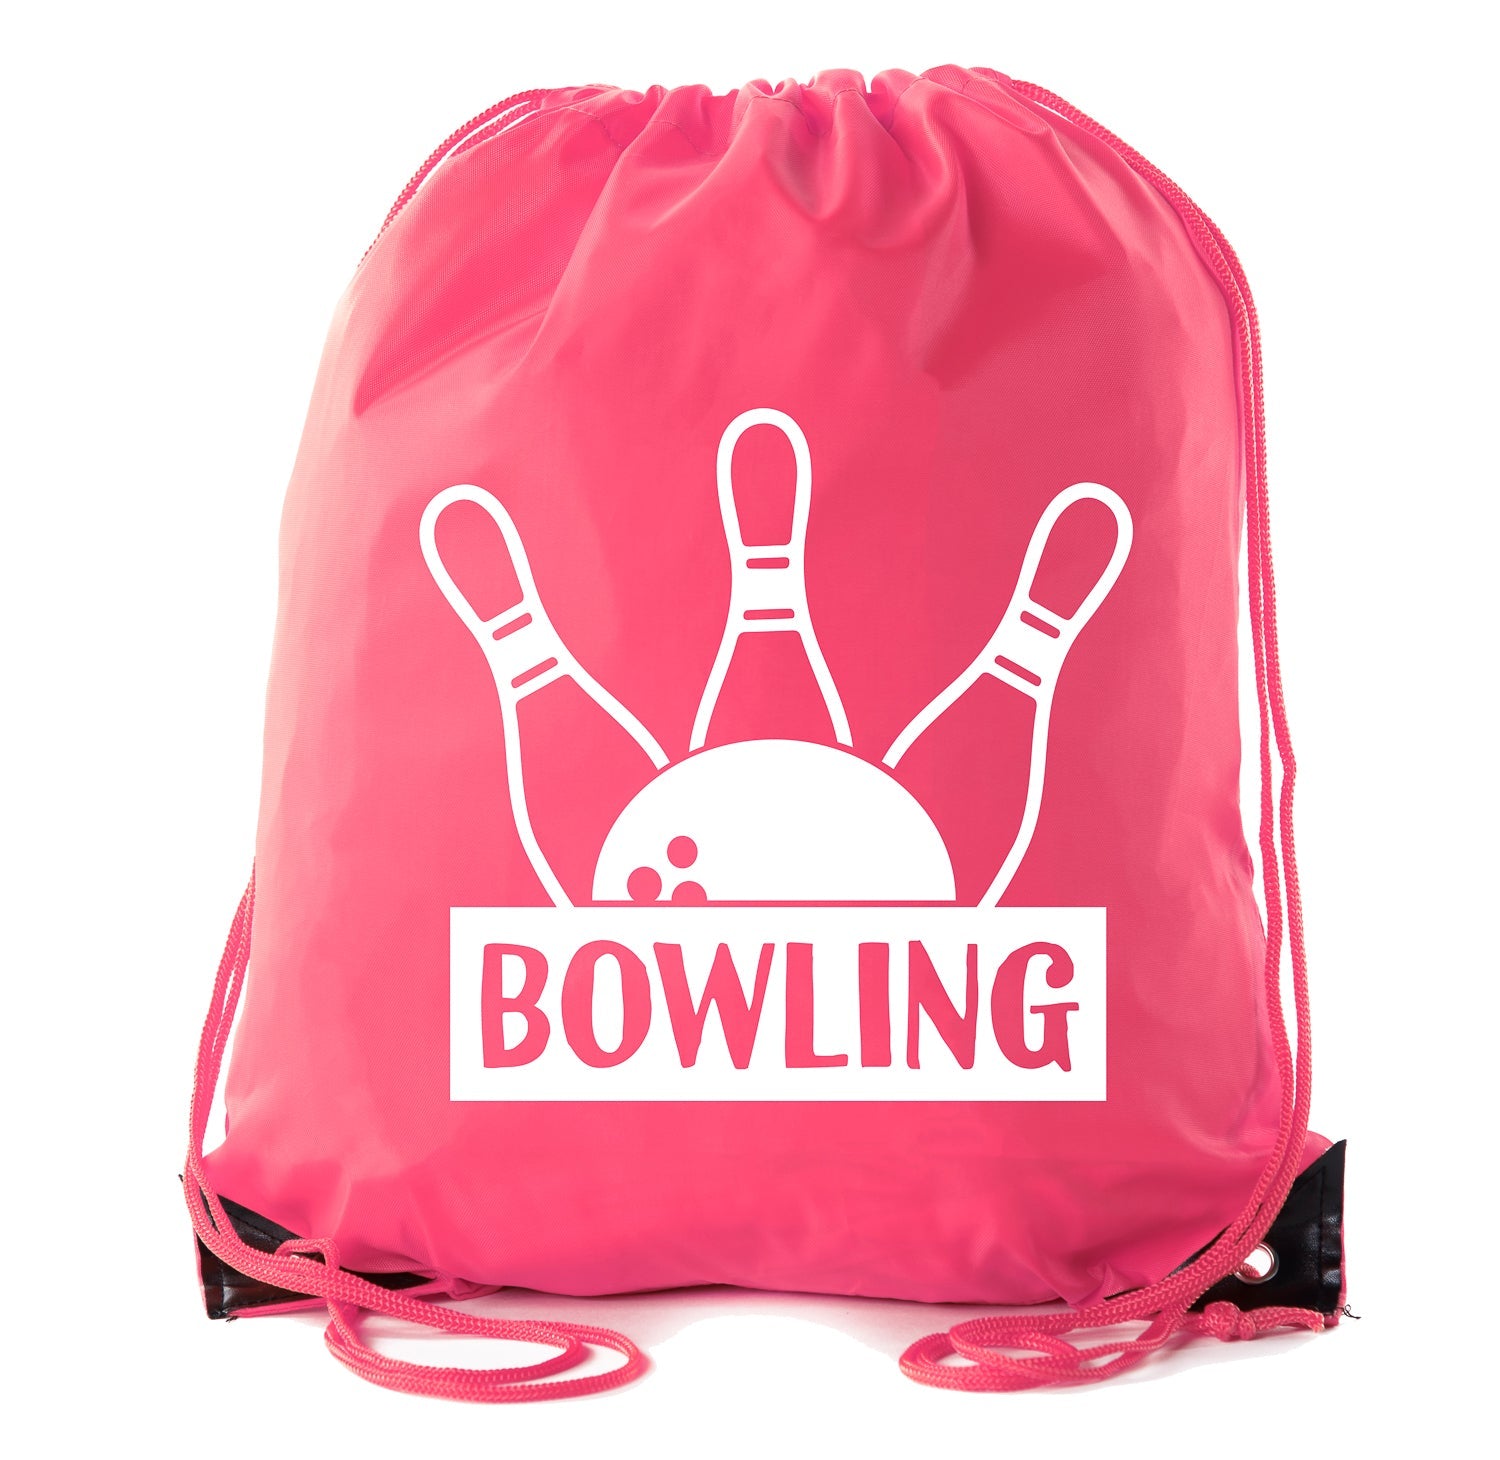 Bowling Ball & Pins Polyester Drawstring Bag - Mato & Hash